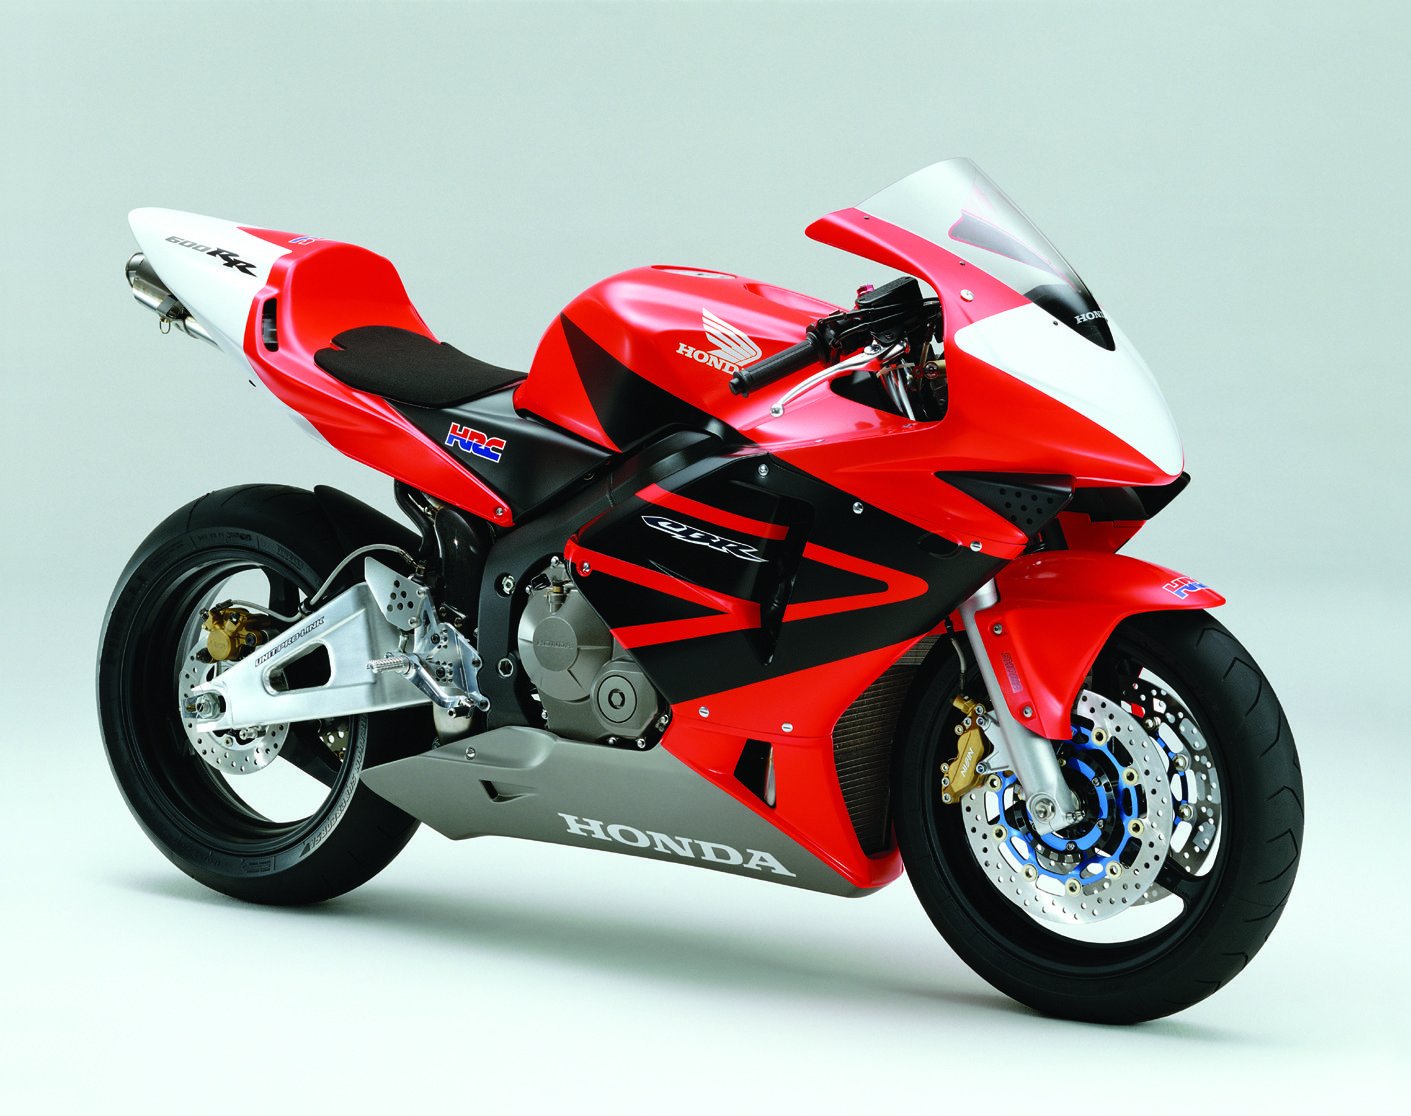 Honda cbr 600 rr - обзор, технические характеристики | mymot - каталог мотоциклов и все объявления об их продаже в одном месте